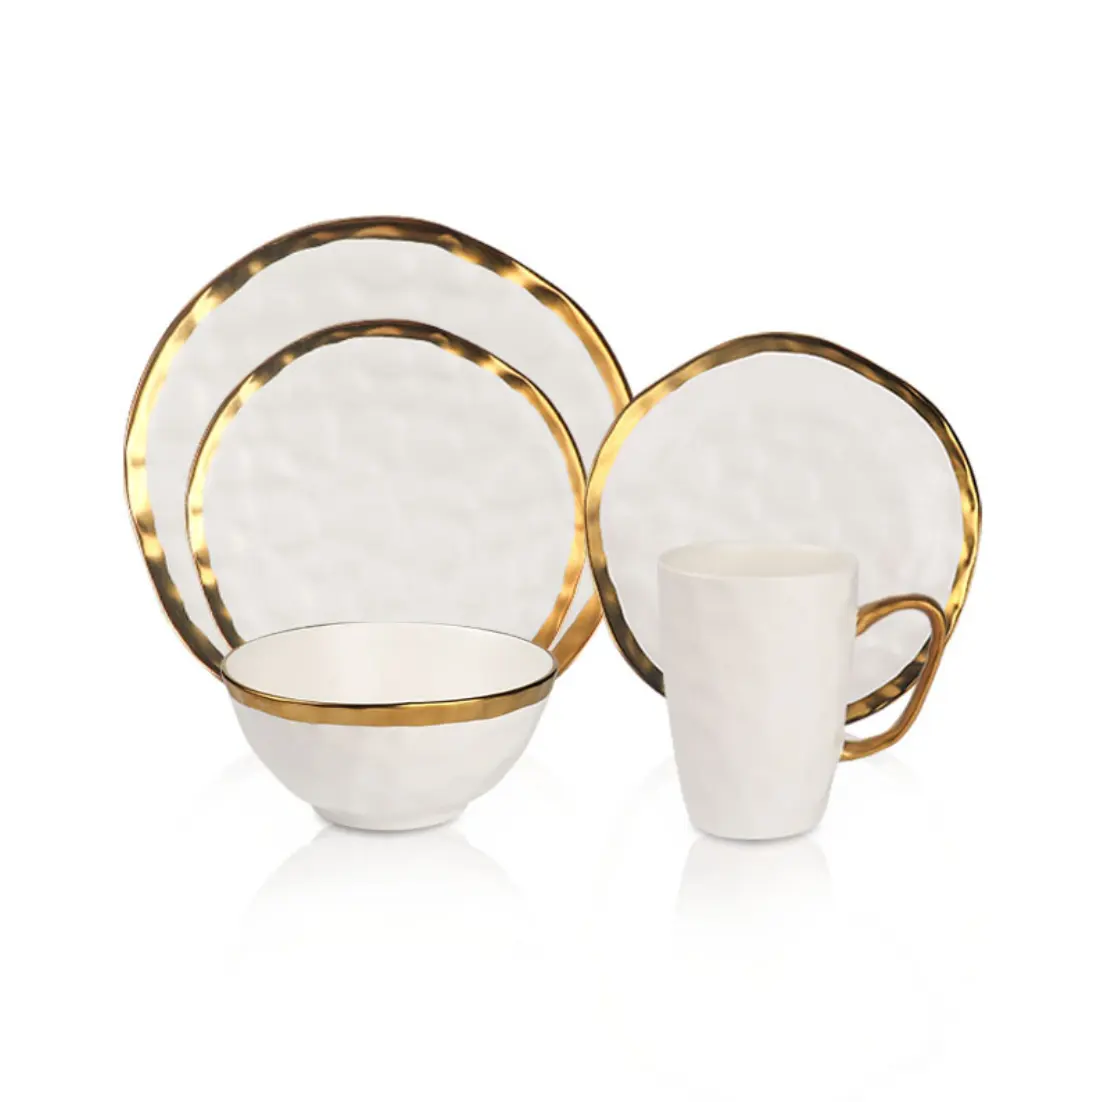 Besta promozionale tazze ciotole di ceramica piatto set da tavola con bordo in oro